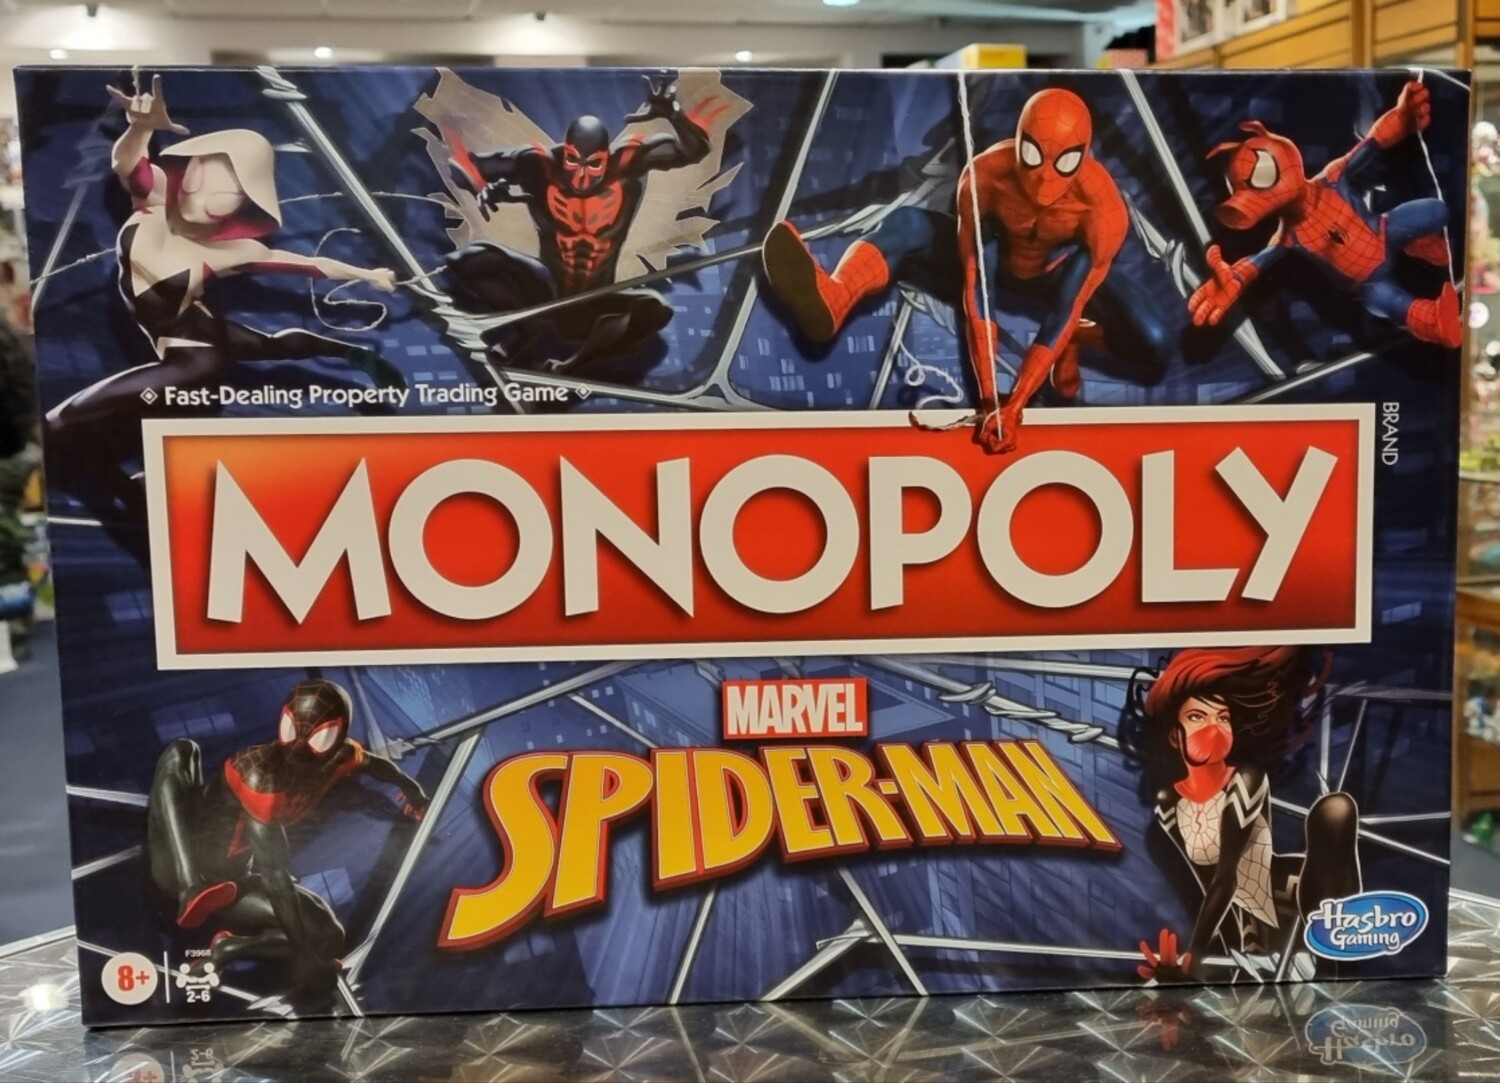 Monopoly, Spiderman, Spider-Man